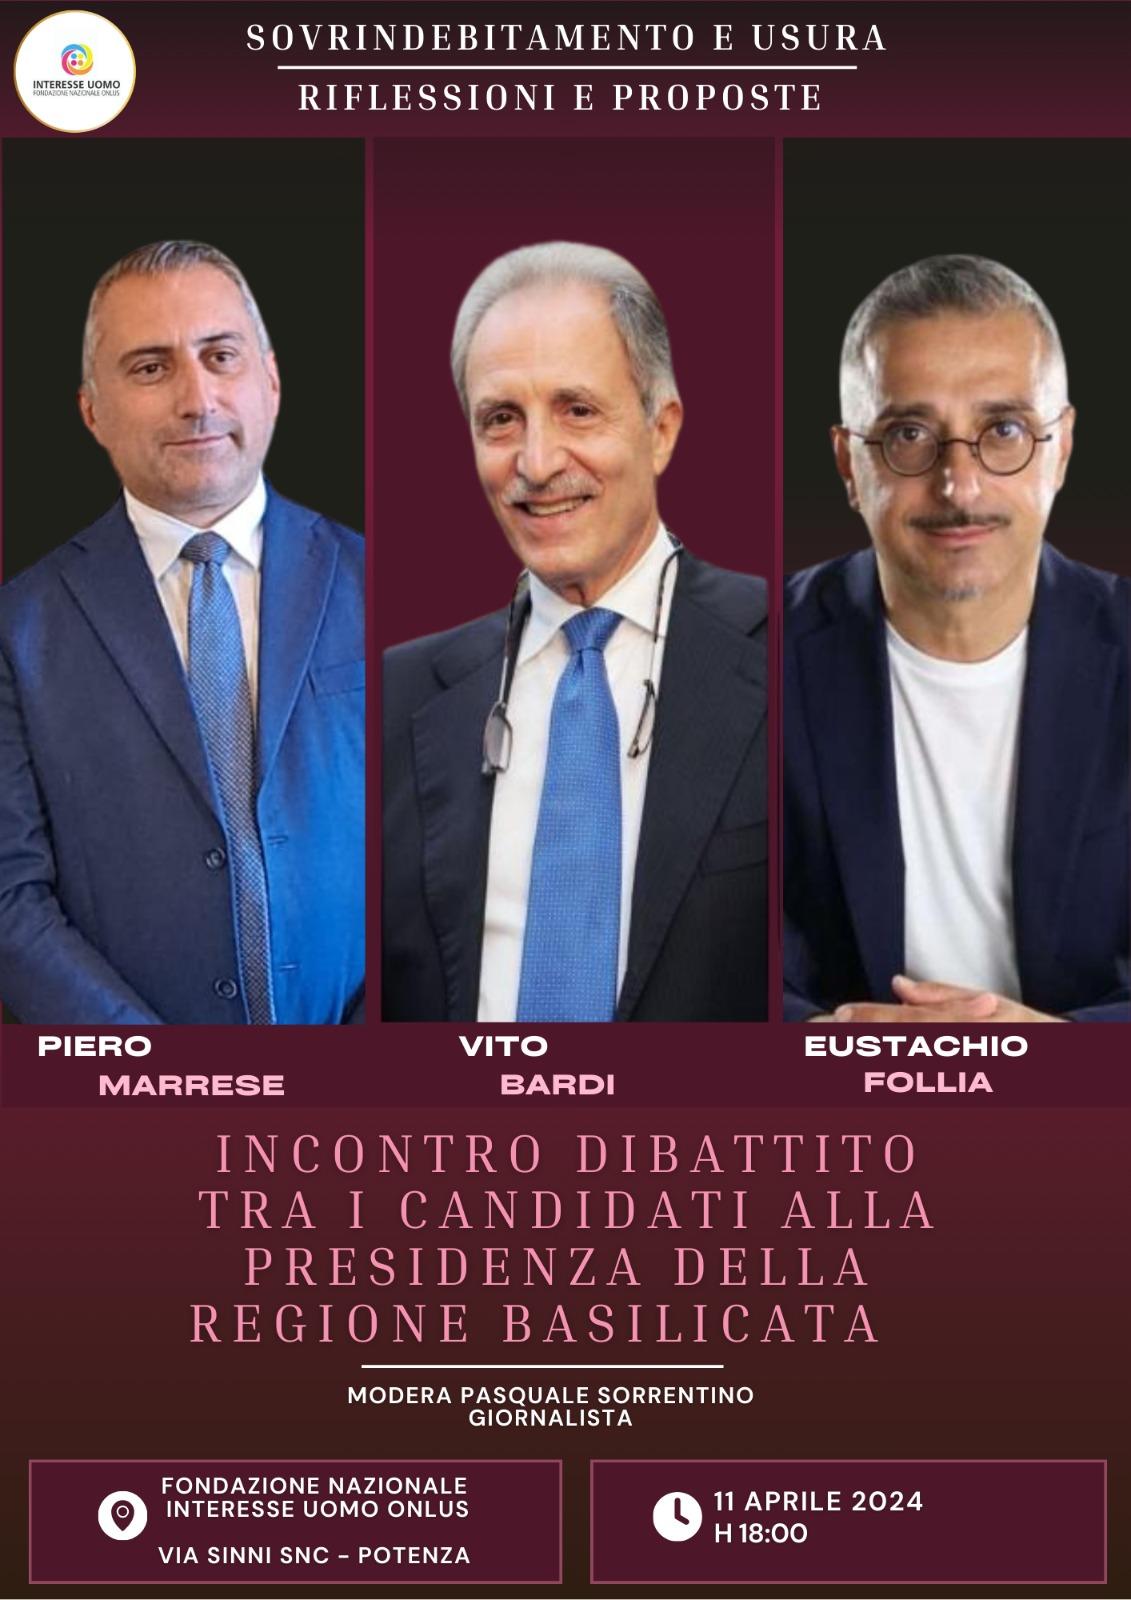  Basilicata: confronto tra i candidati alla Presidenza della Regione  su sovrindebitamento e usura